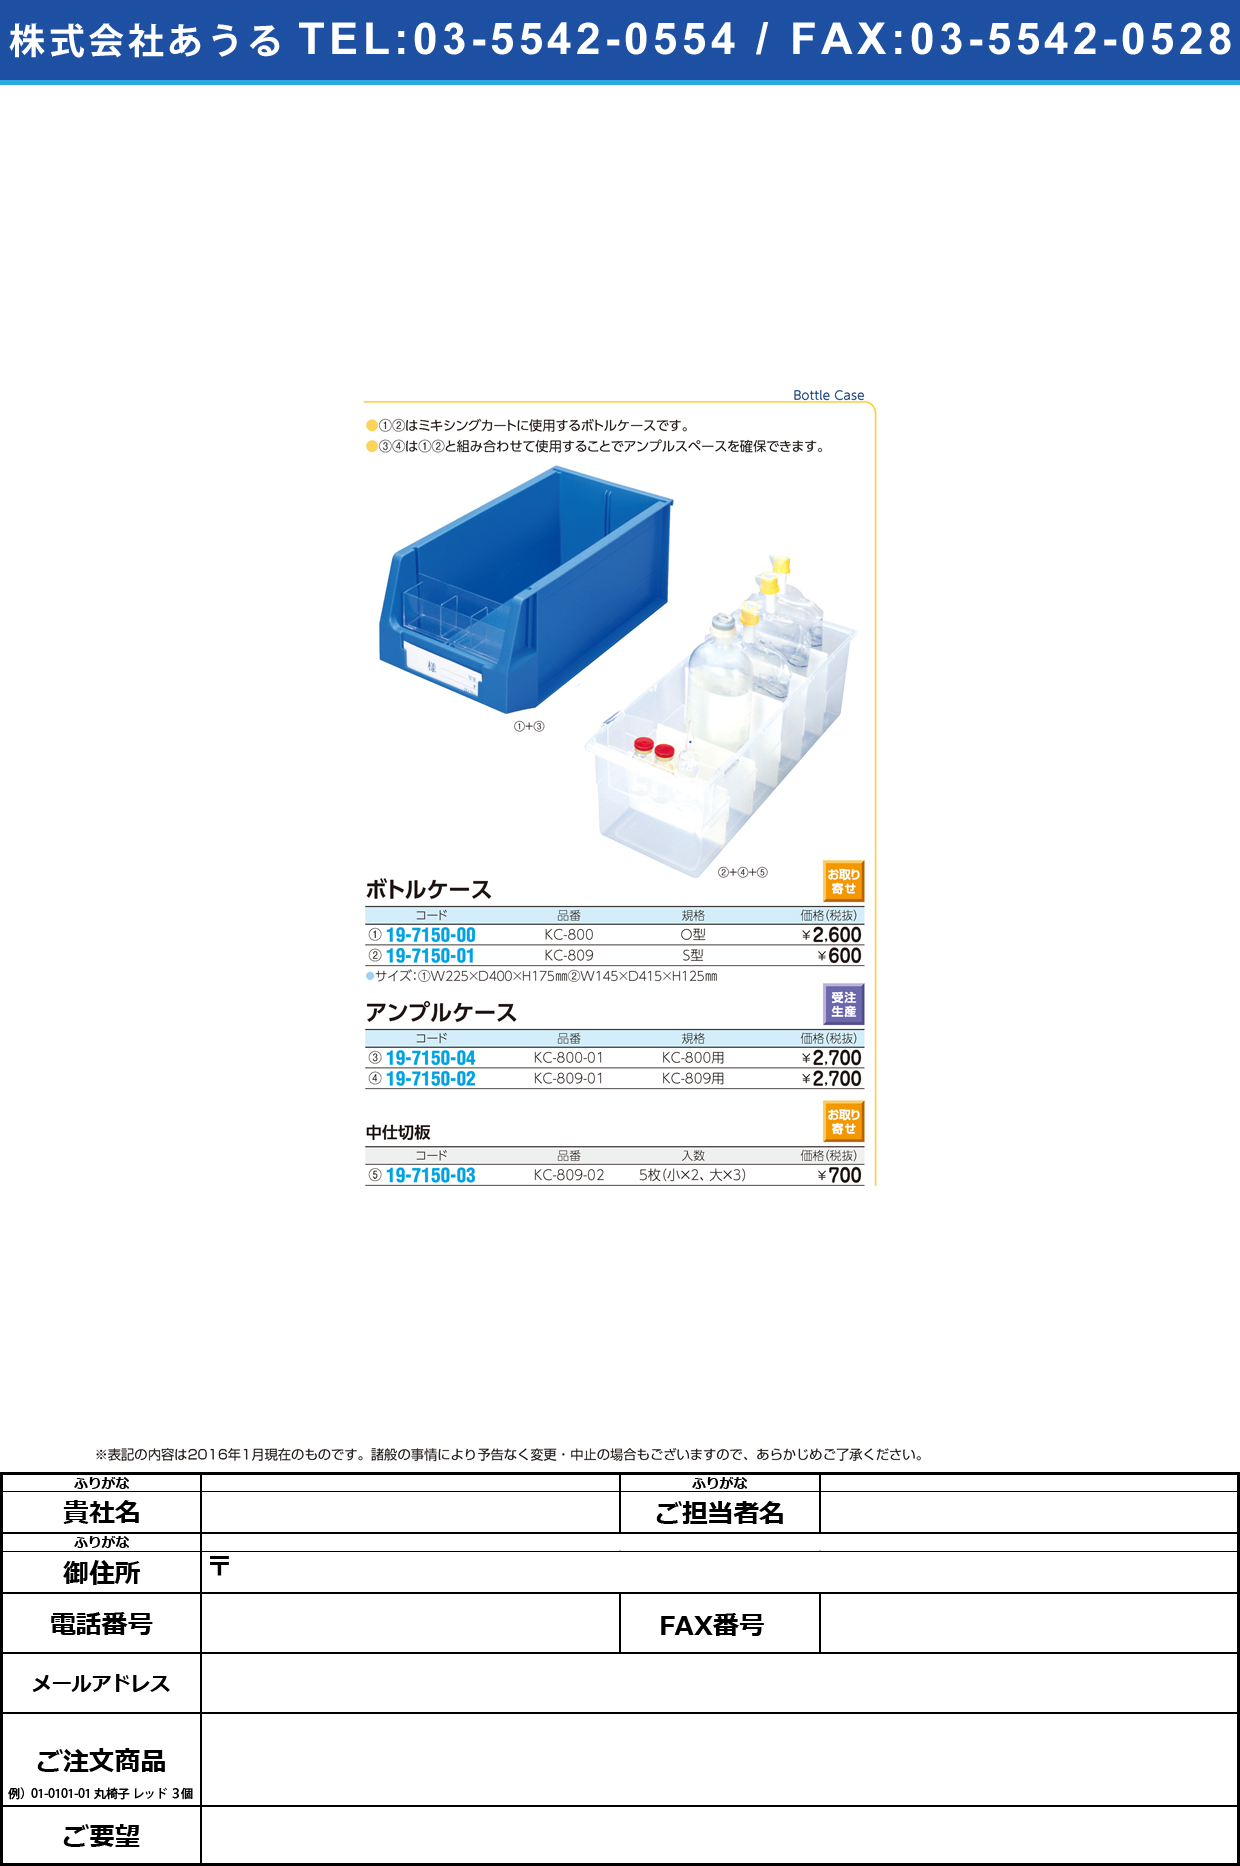 (19-7150-04)ボトルケースＯ型用アンプルケース ﾎﾞﾄﾙｹｰｽOｶﾞﾀｱﾝﾌﾟﾙｹｰｽ KC-800-01【1個単位】【2016年カタログ商品】